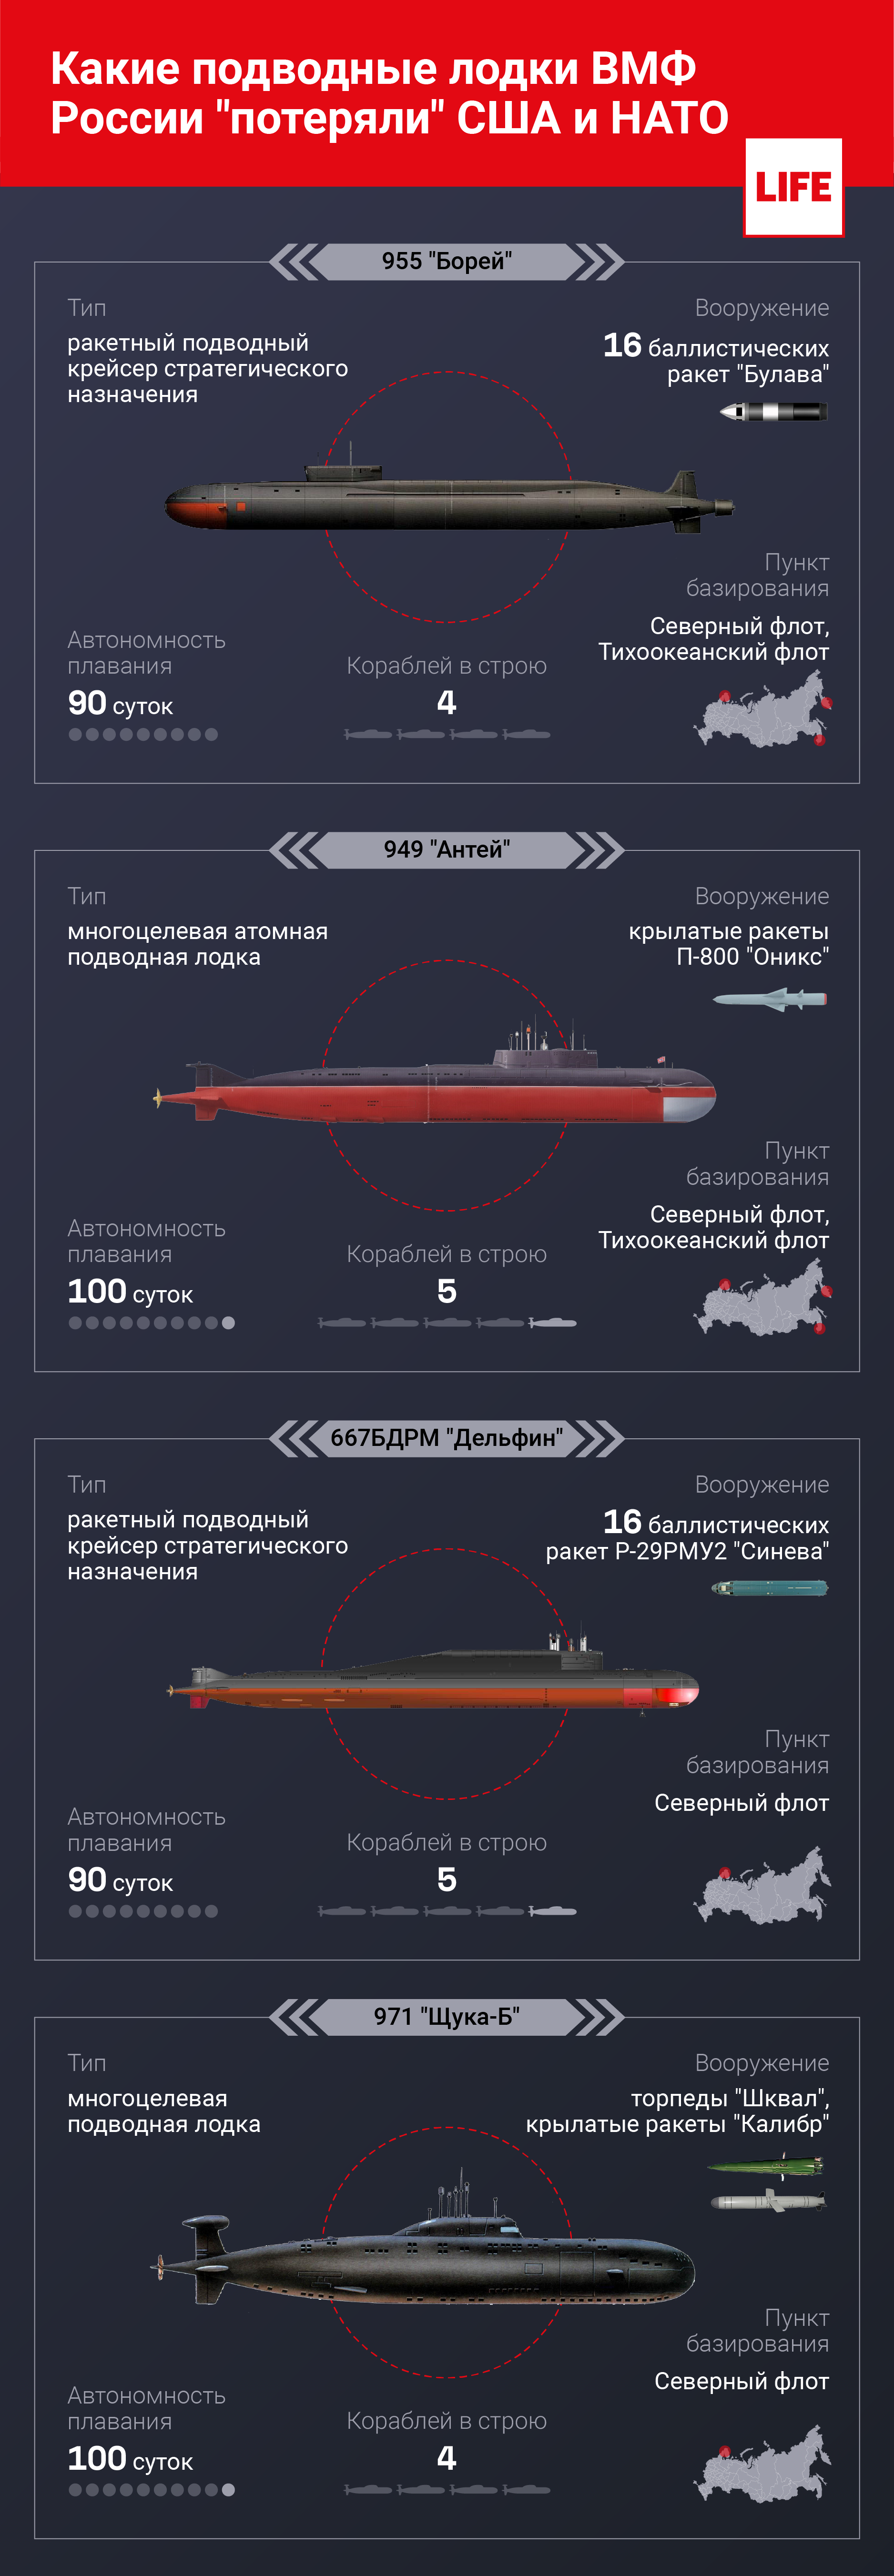 Какие подводные лодки ВМФ России "потеряли" США и НАТО. © LIFE